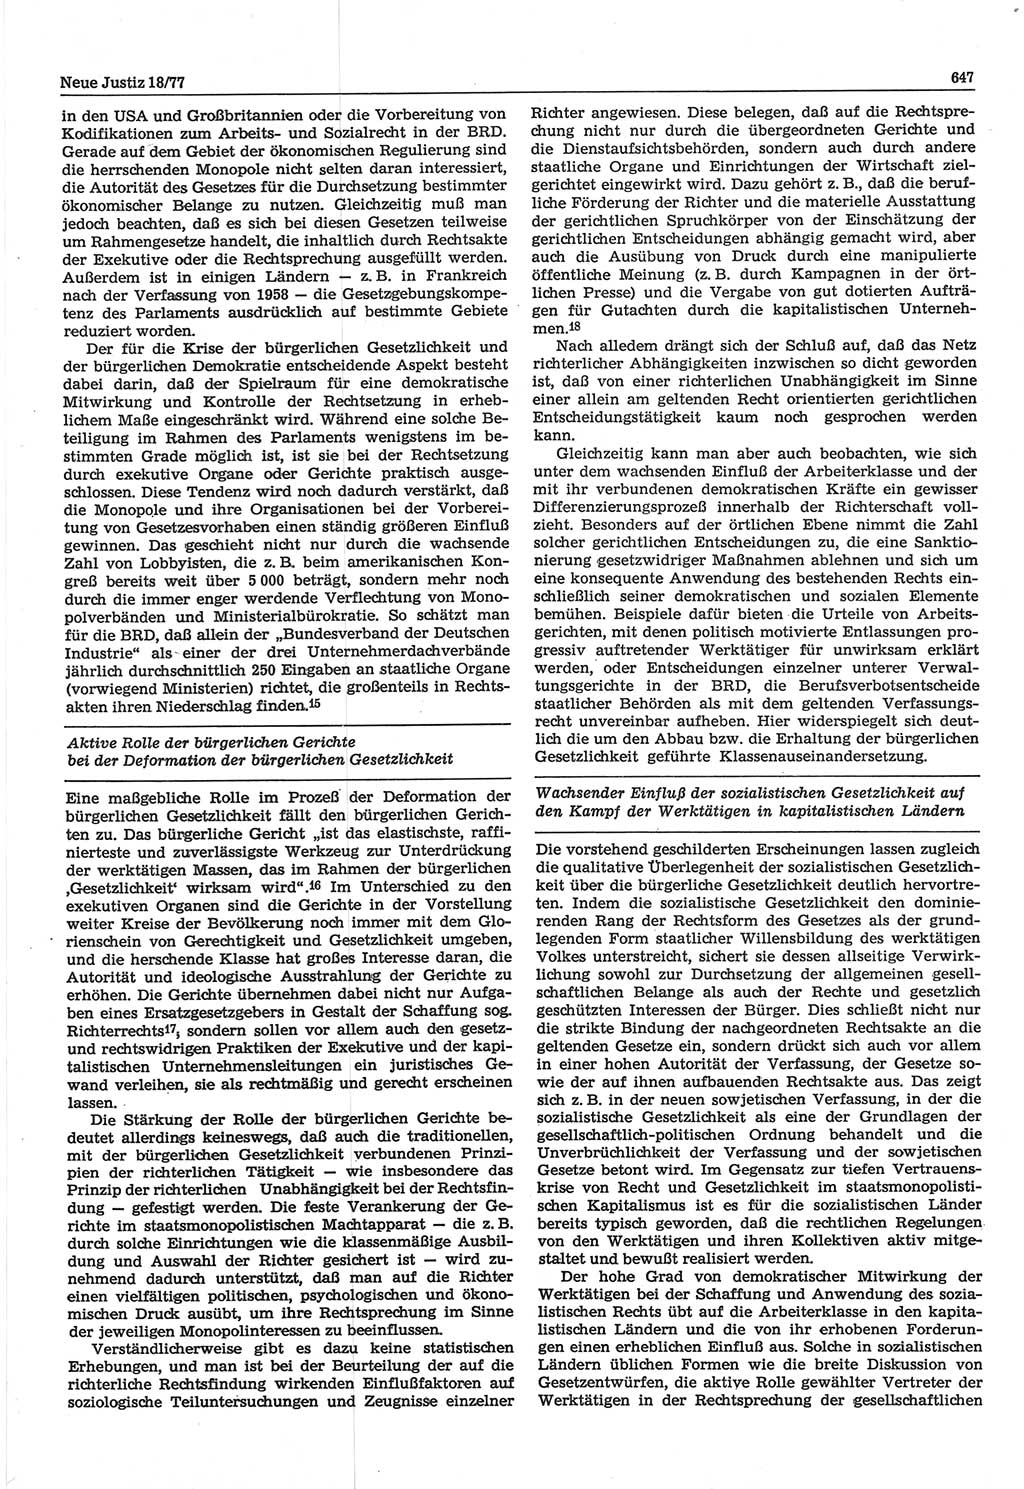 Neue Justiz (NJ), Zeitschrift für Recht und Rechtswissenschaft-Zeitschrift, sozialistisches Recht und Gesetzlichkeit, 31. Jahrgang 1977, Seite 647 (NJ DDR 1977, S. 647)